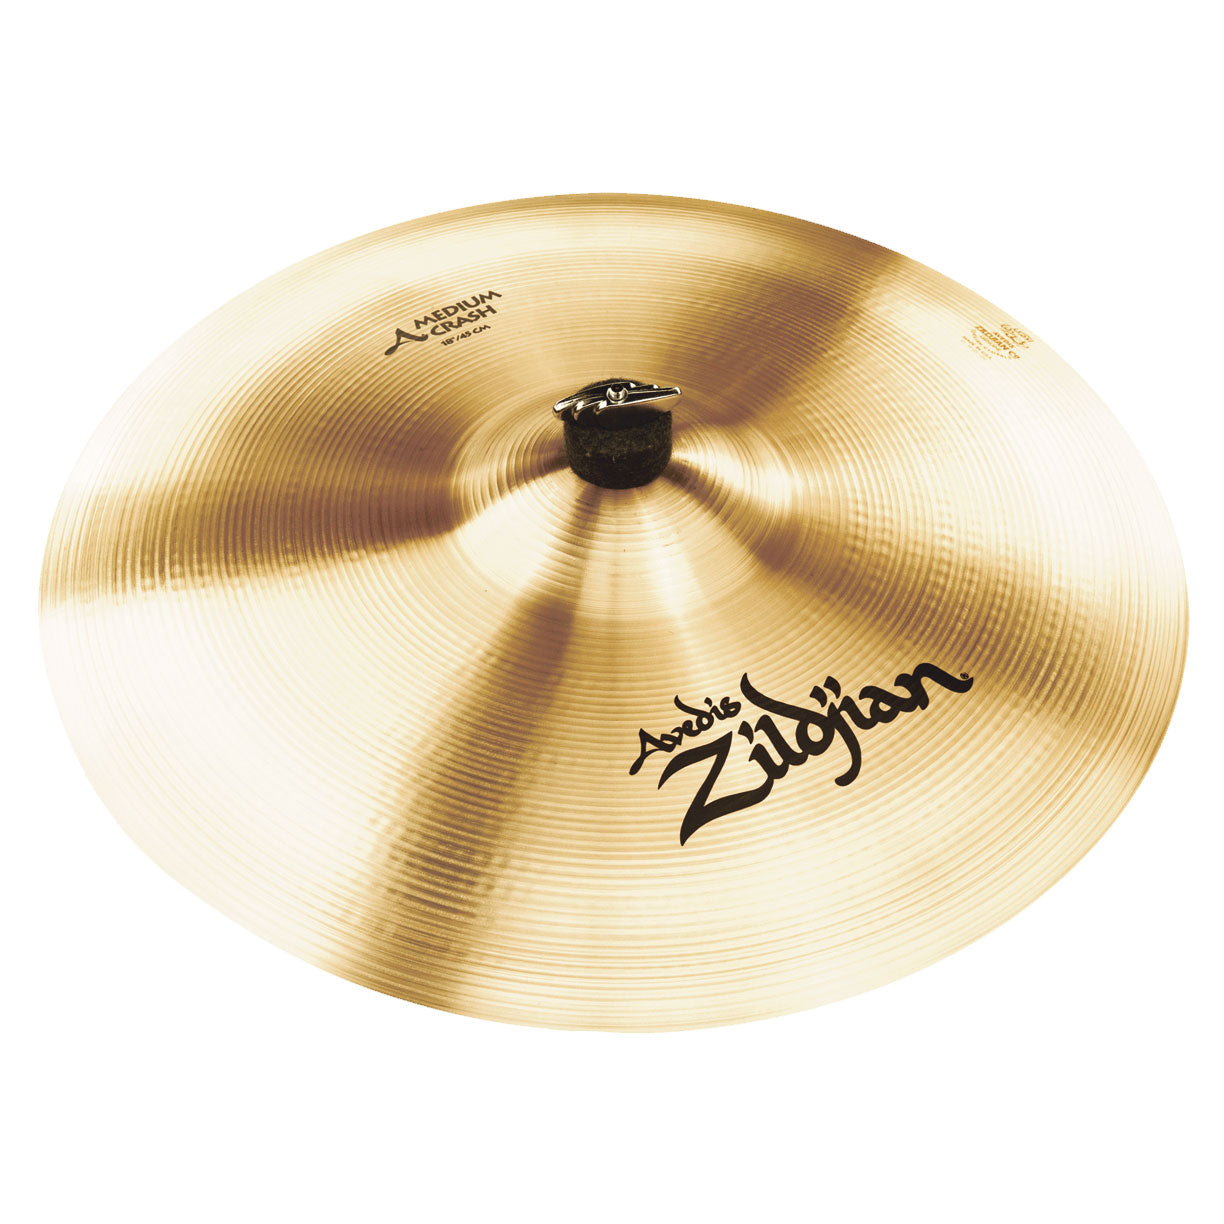 Zildjian A Series 18" Cast Bronze Medium Crash Cymbal